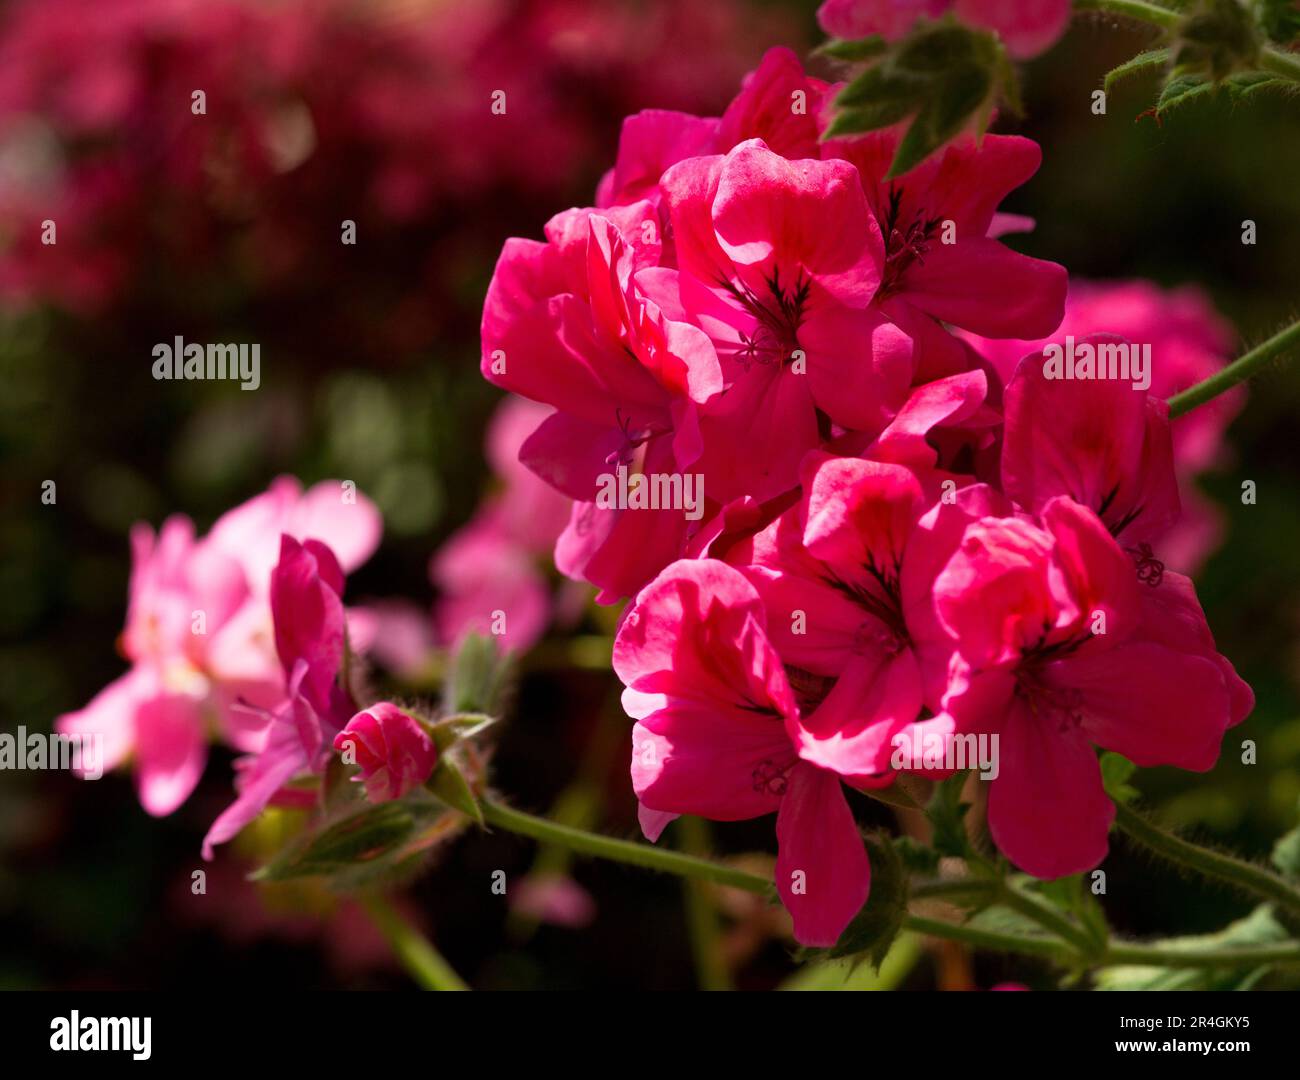 Pelargonium peltatum rose ou géranium de lierre, fleurs roses simples. Le feuillage est vert clair, charnel avec des lobes pointés. Banque D'Images